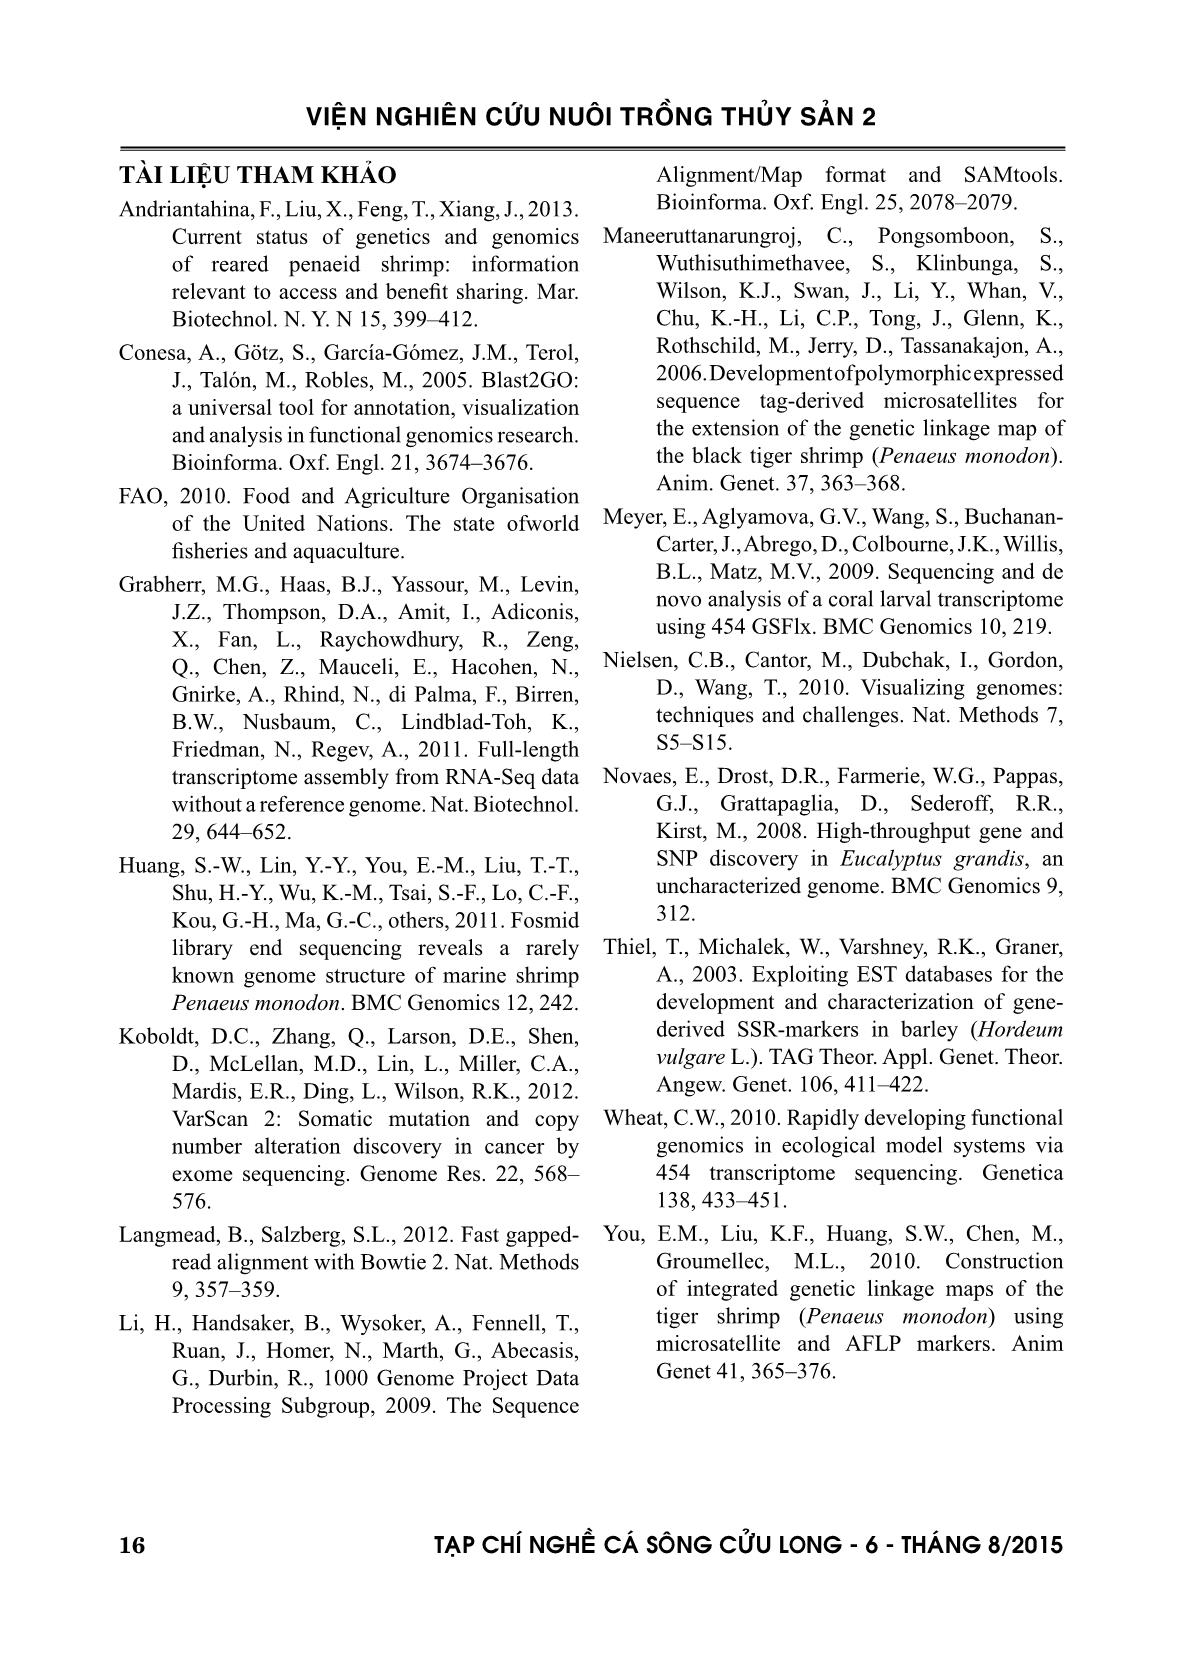 Lắp ráp, chú giải và phân tích hệ phiên mã tôm sú Penaeus monodon trang 8